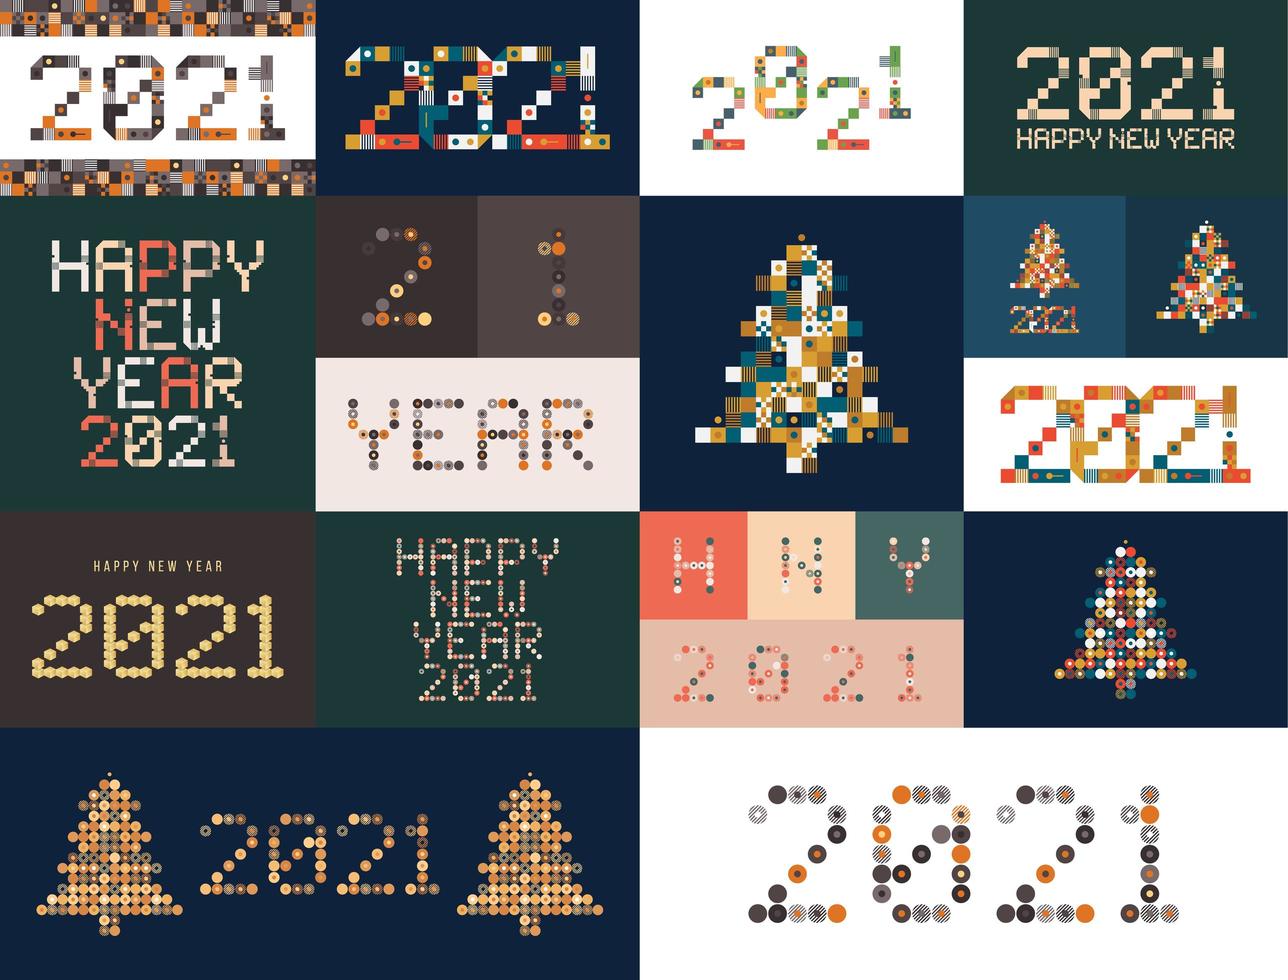 Nieuwjaar divers ongebruikelijk bord voor 2021 evenementdecoratie, schattig grafisch, creatief embleemconcept voor banner, brochure, flyer, kalender, wenskaart, evenementuitnodiging. geïsoleerde vector logo.